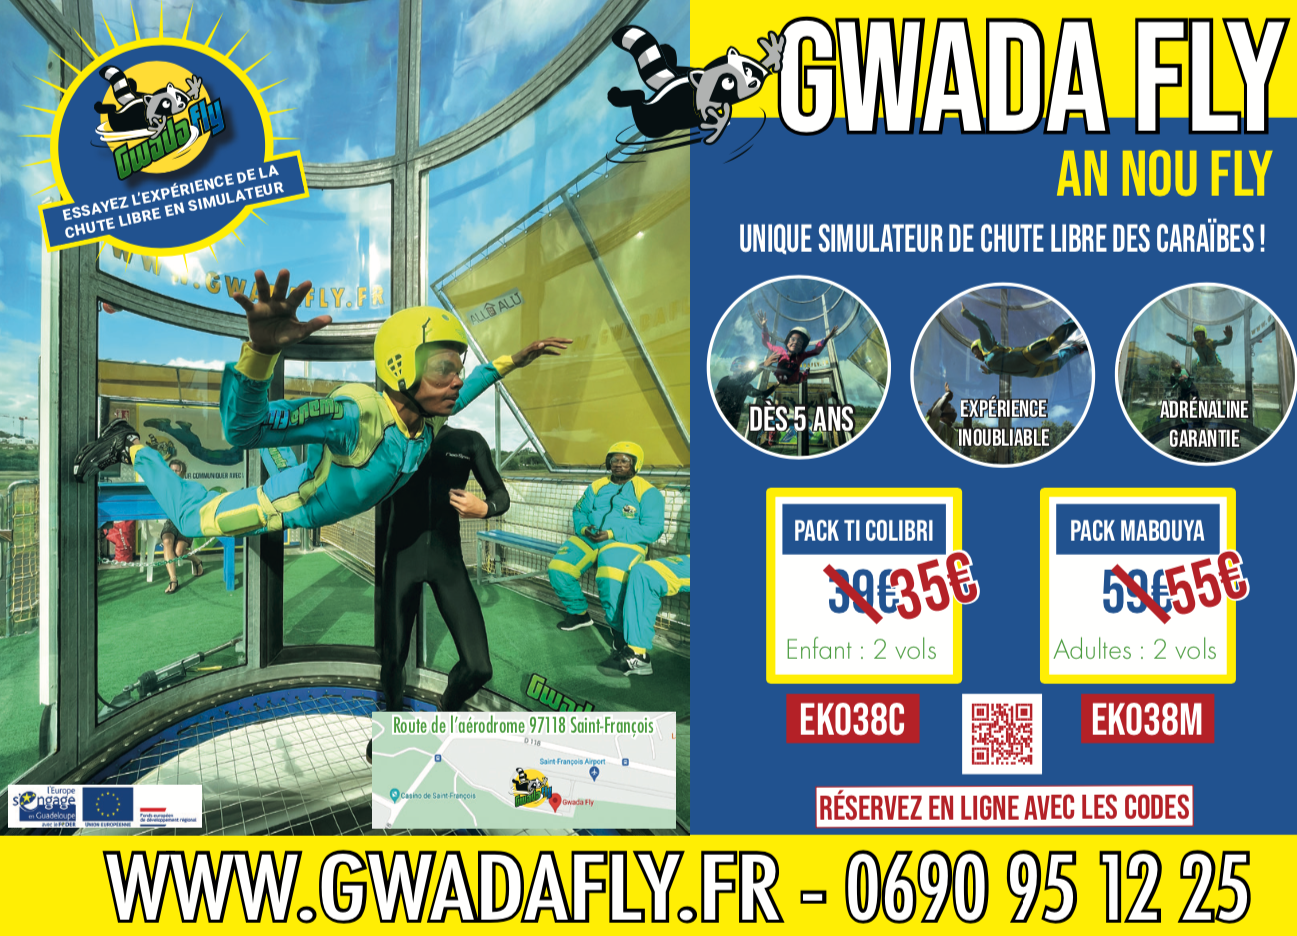 GWADA FLY